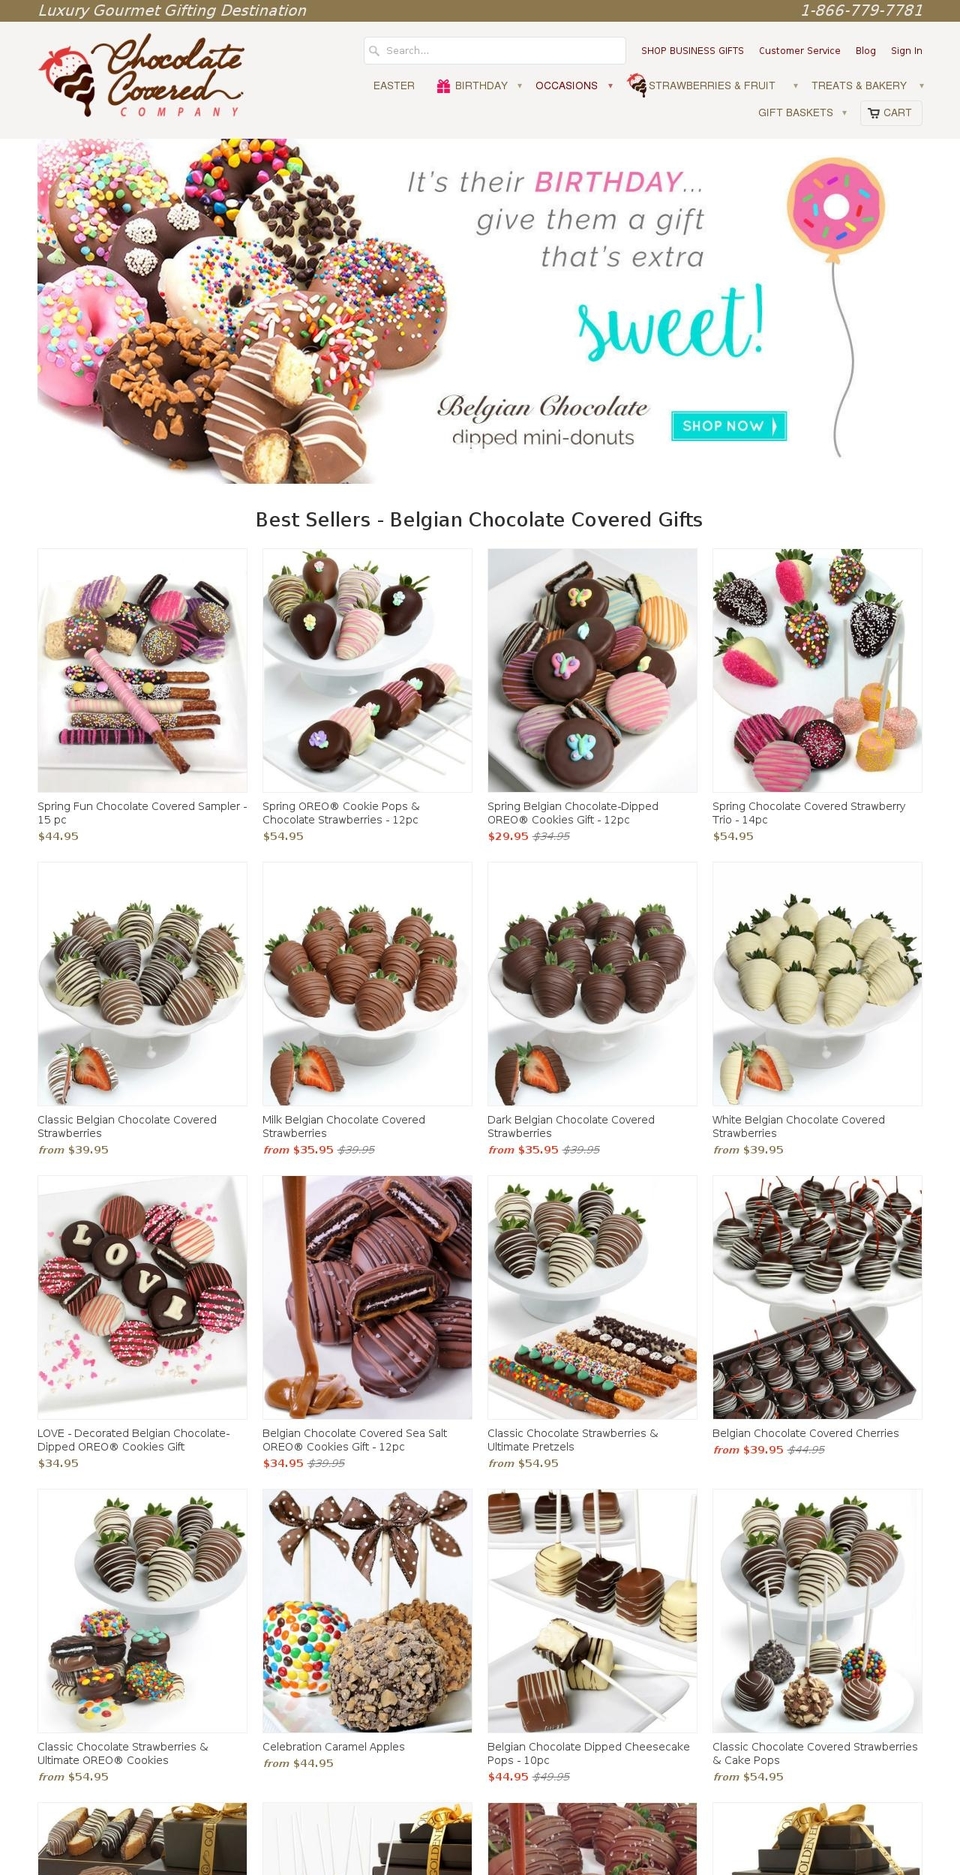 Mobilia Shopify theme site example chocolatecoveredcompany.com